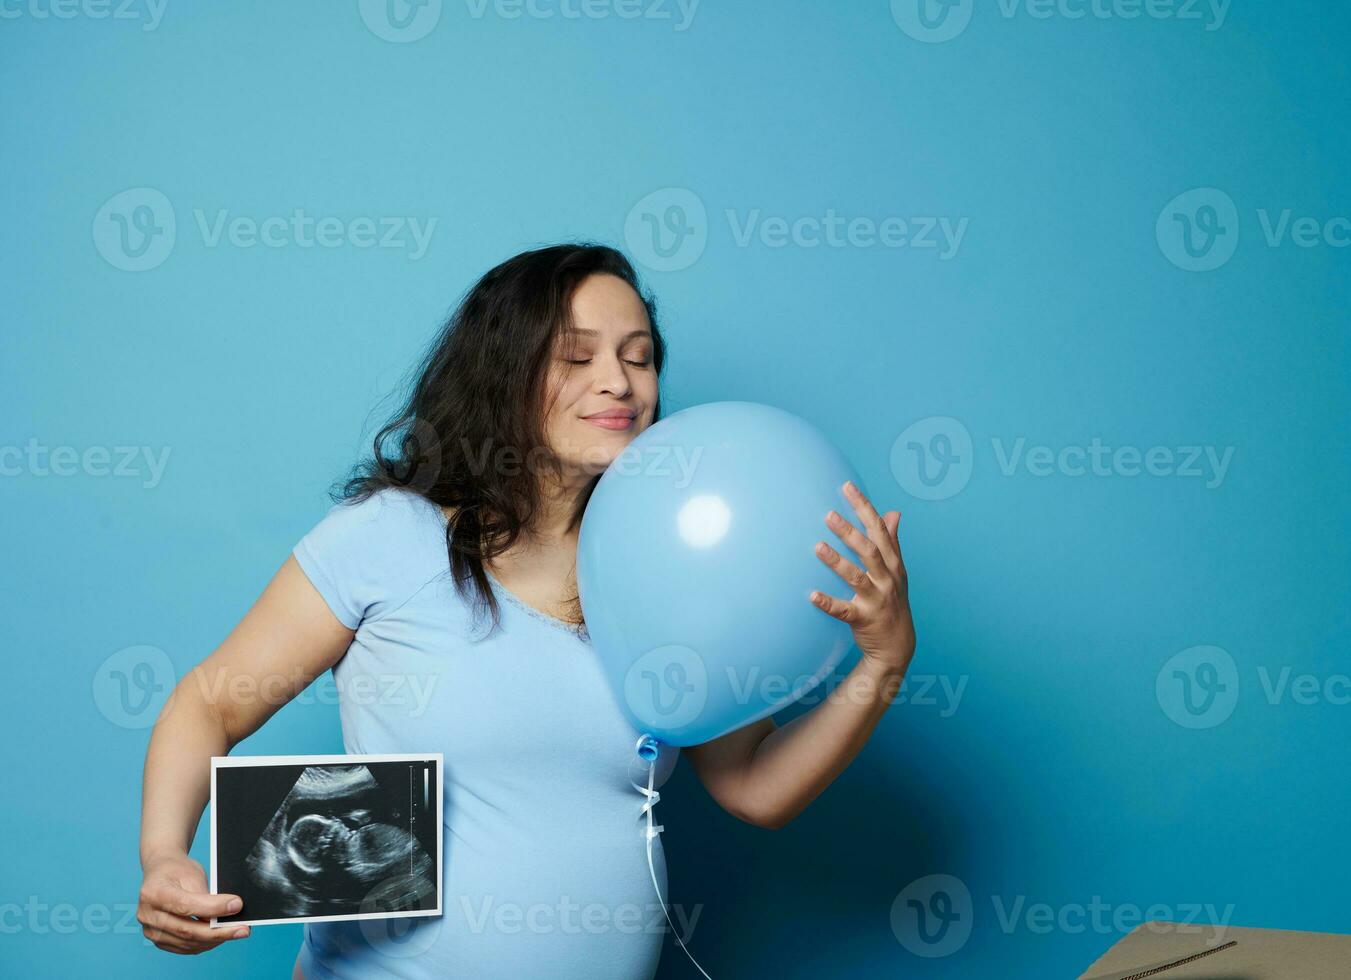 encantador embarazada mujer abrazando azul globo, posando con ultrasonografía imagen de su futuro bebé chico, azul fondo foto